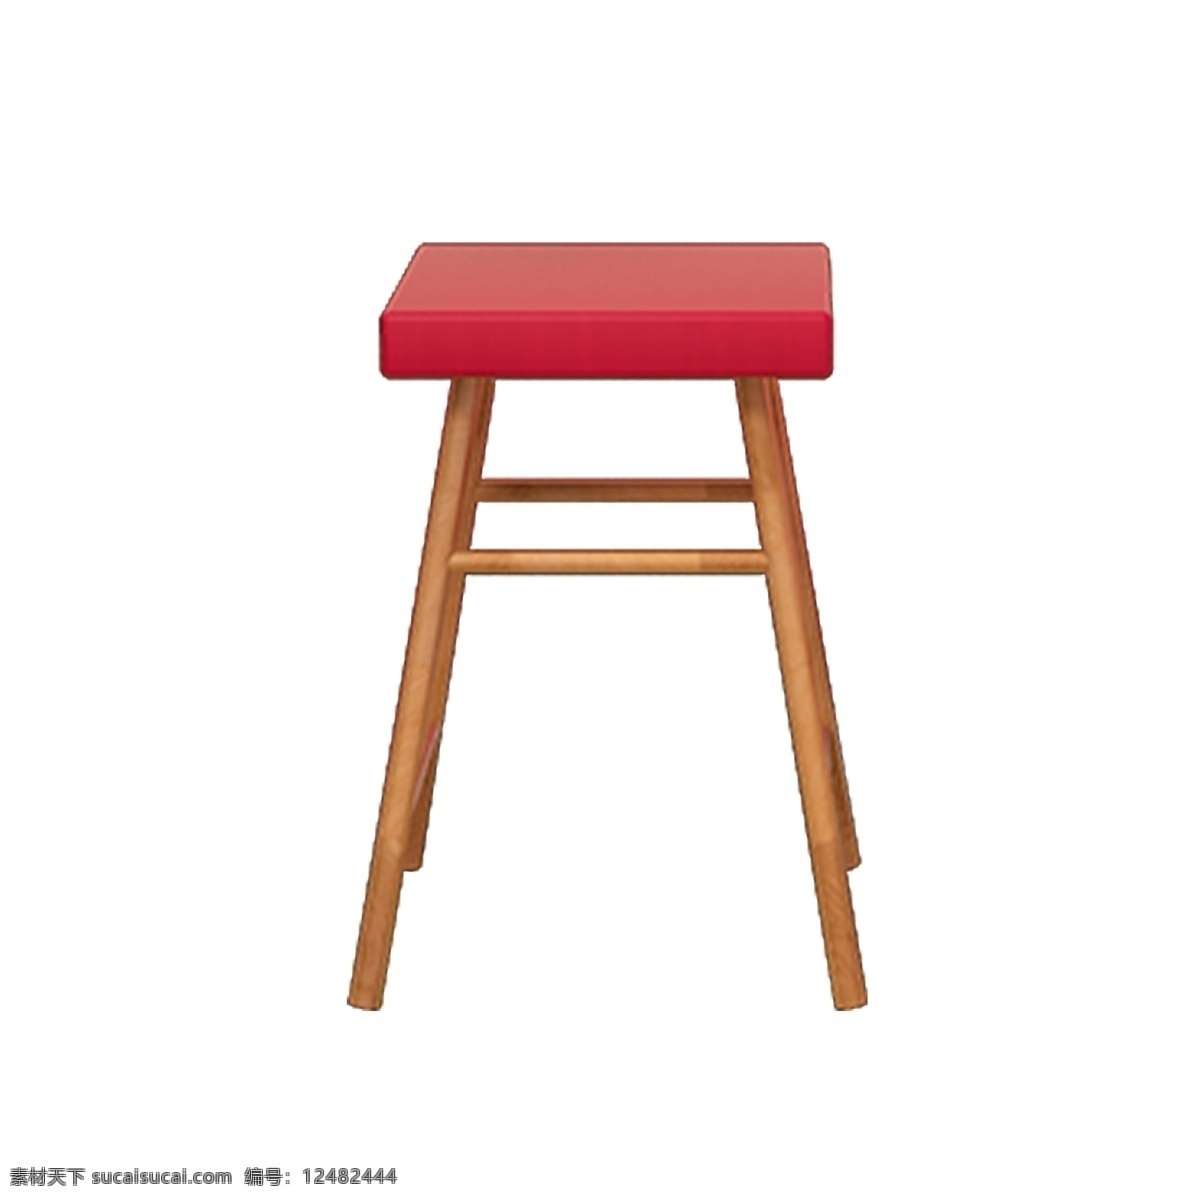 张 红色 四方 凳子 木凳 家居木凳 木 木材 家庭木凳 四方凳子 四角凳子 木桌 木制品 木工艺